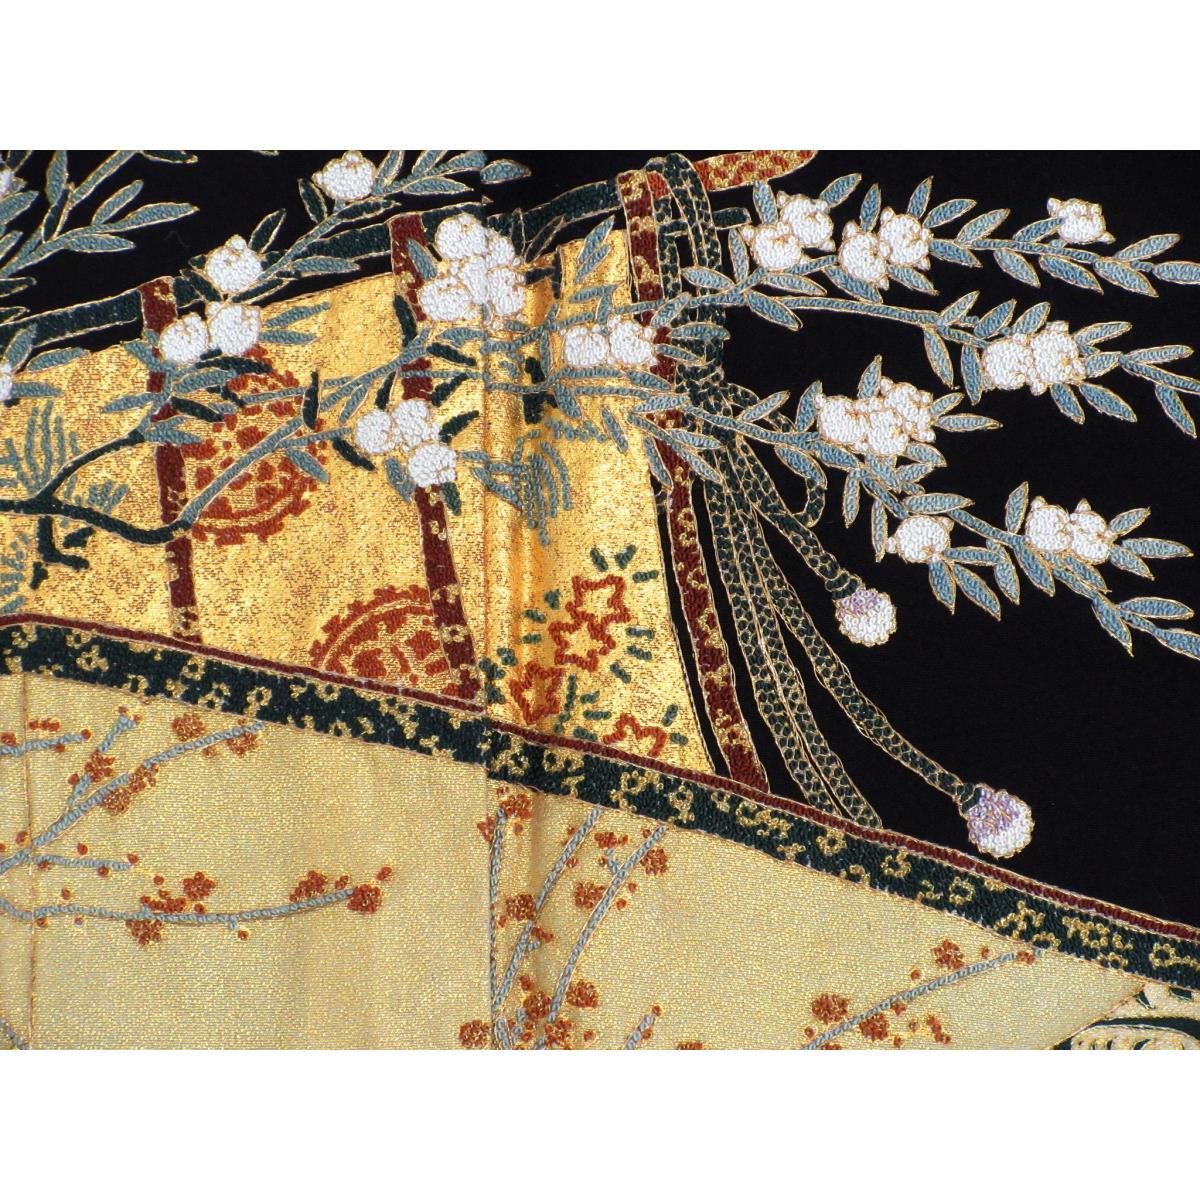 Tomesode (formal kimono) by Matsuo Korin, Sagara embroidery, sword and sword eating